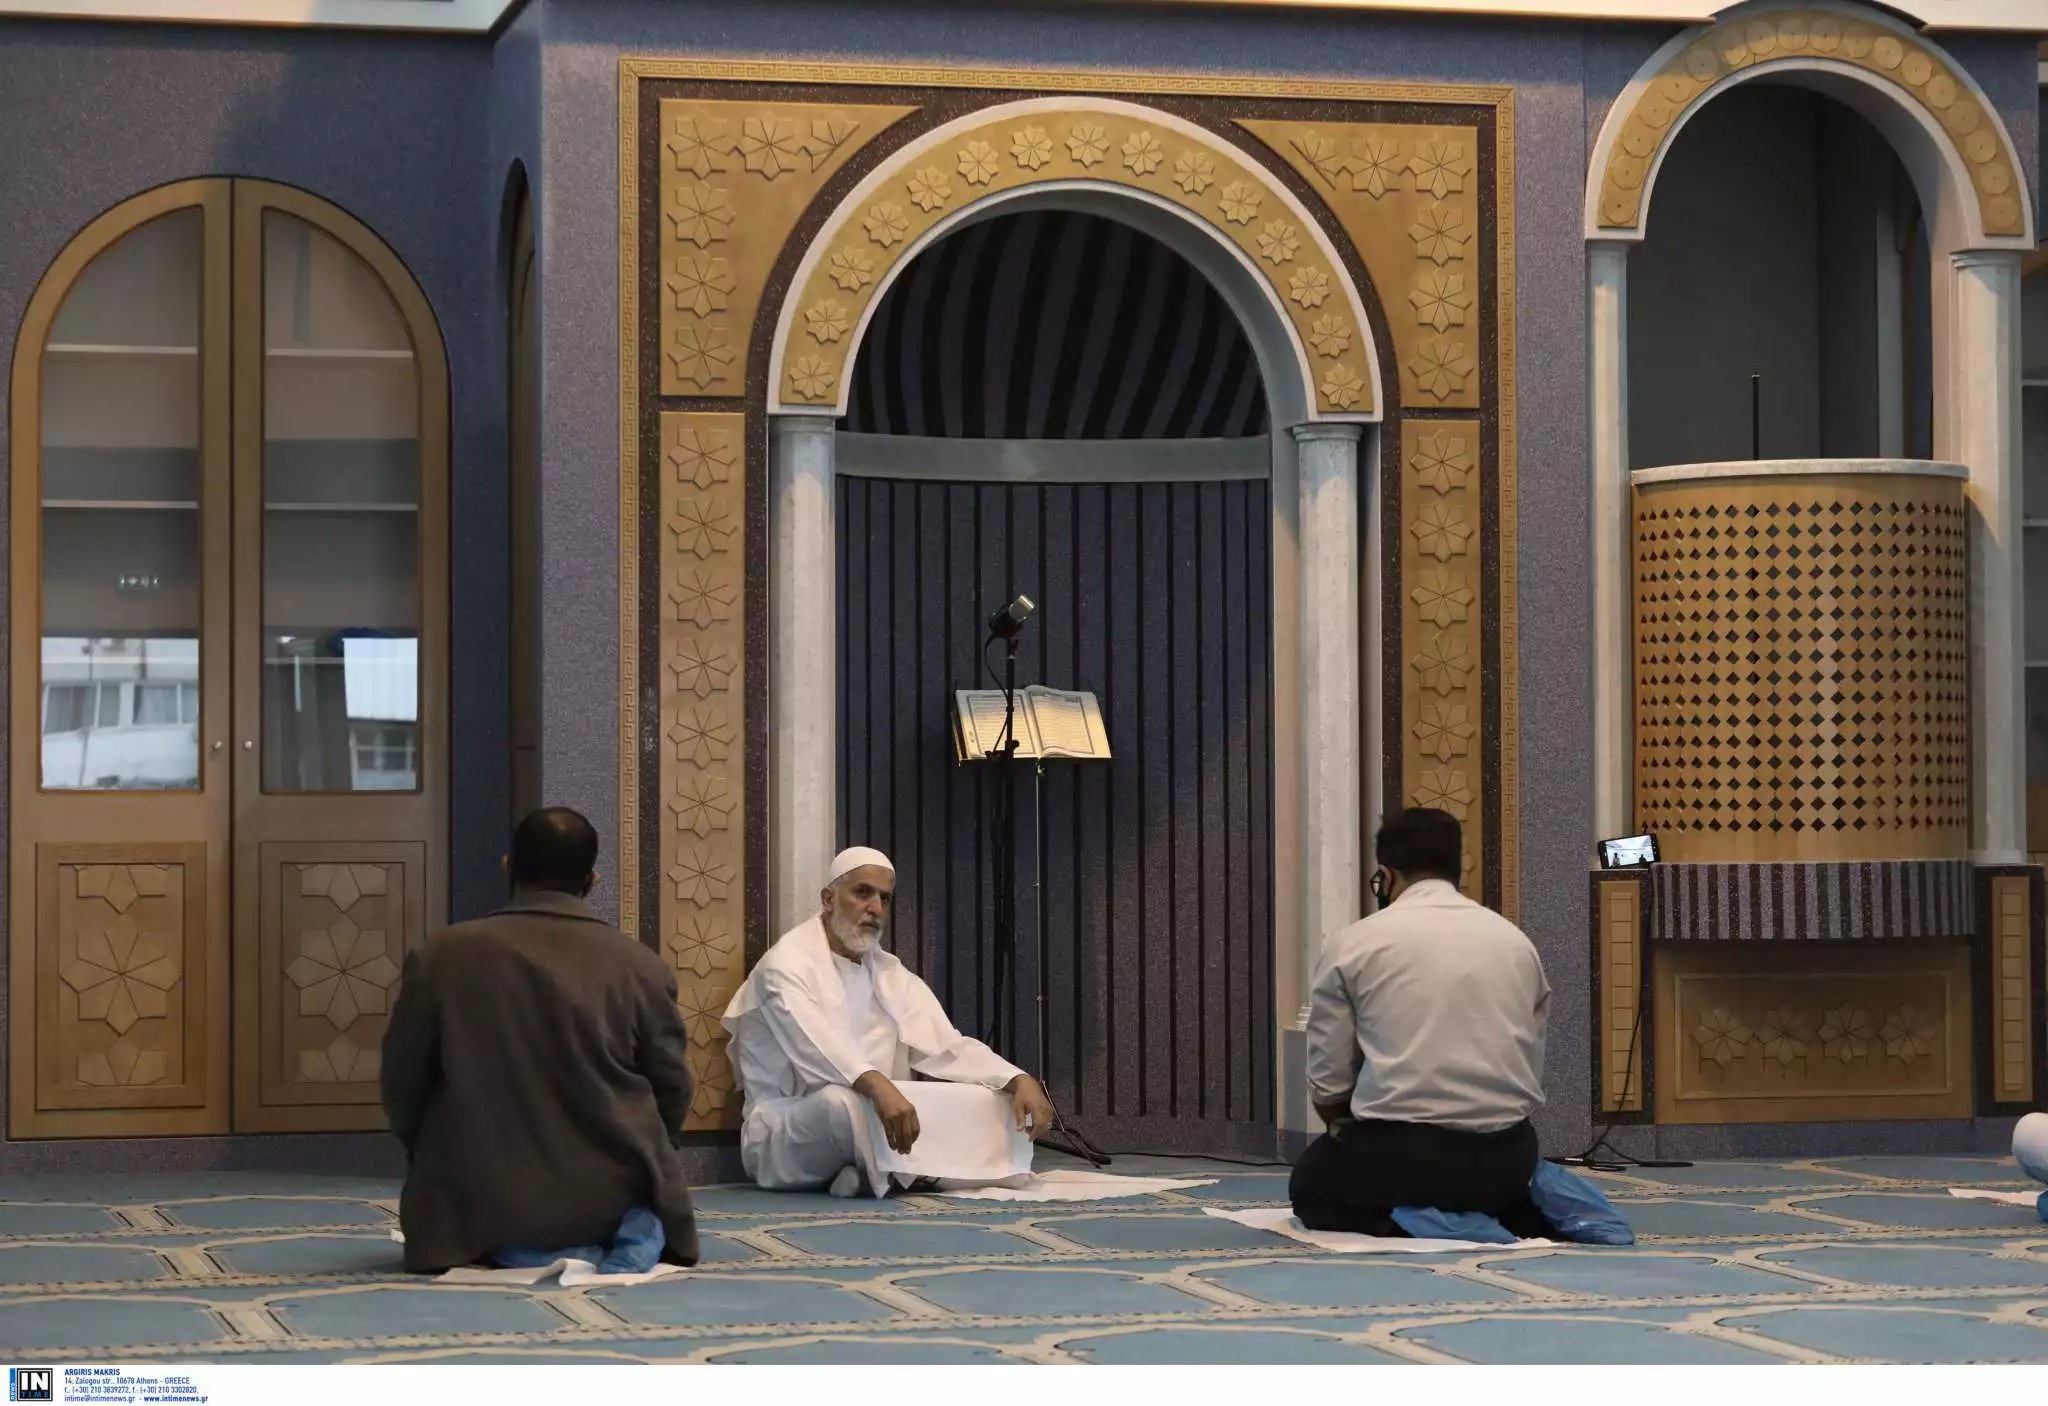 Μετά το τζαμί έρχεται και το μουσουλμανικά νεκροταφείο: Τι ζητούν οι…  «μεταναστευτικές κοινότητες»